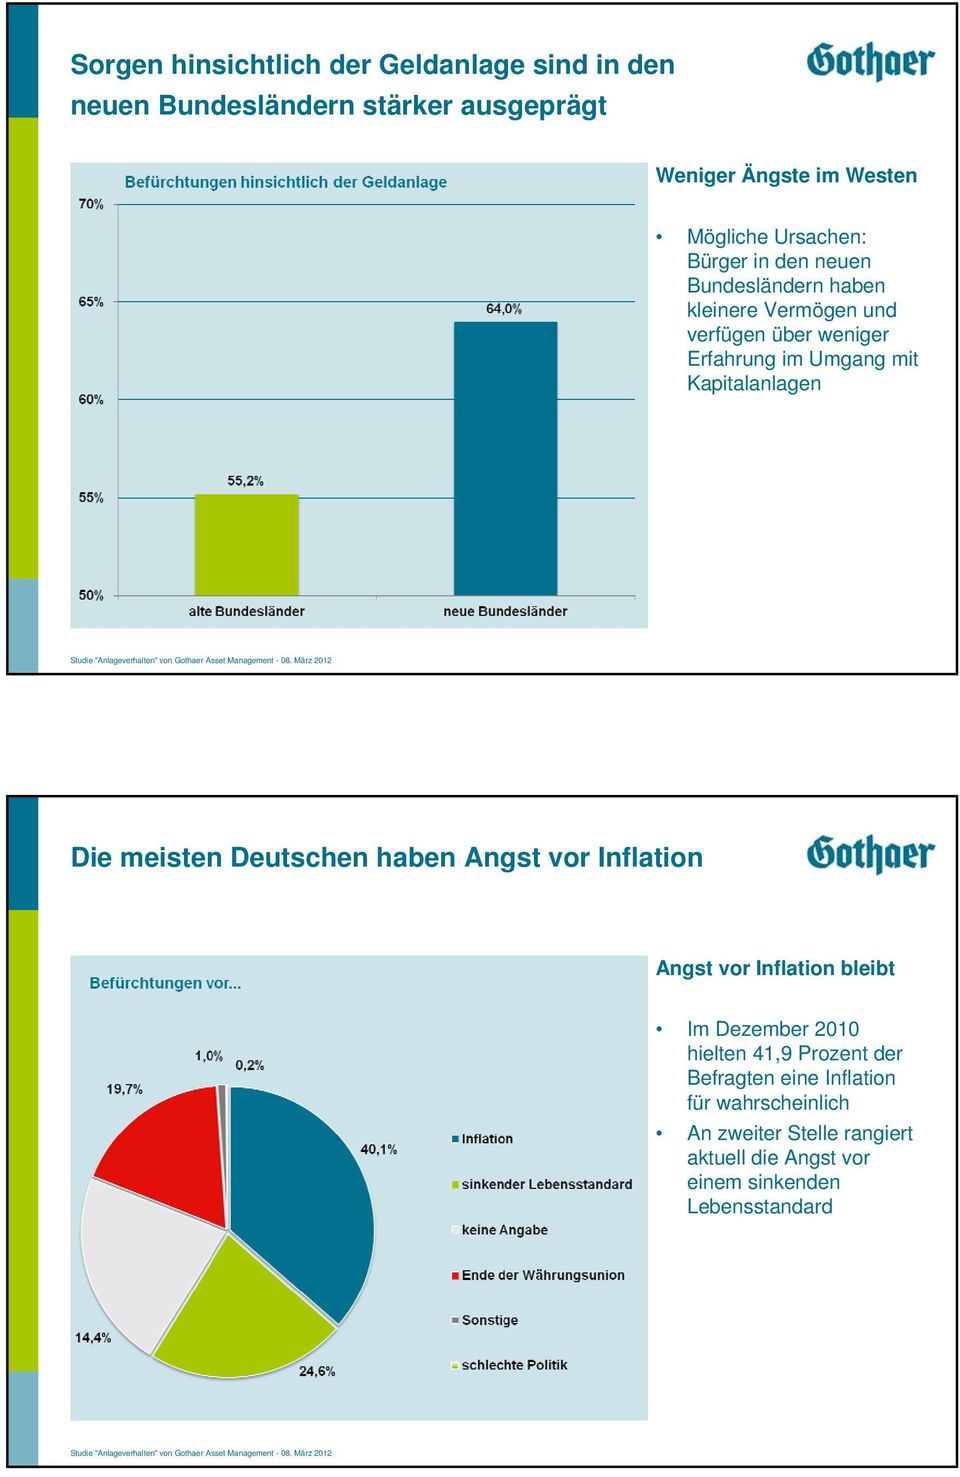 Kapitalanlagen Die meisten Deutschen haben Angst vor Inflation Angst vor Inflation bleibt Im Dezember 2010 hielten 41,9